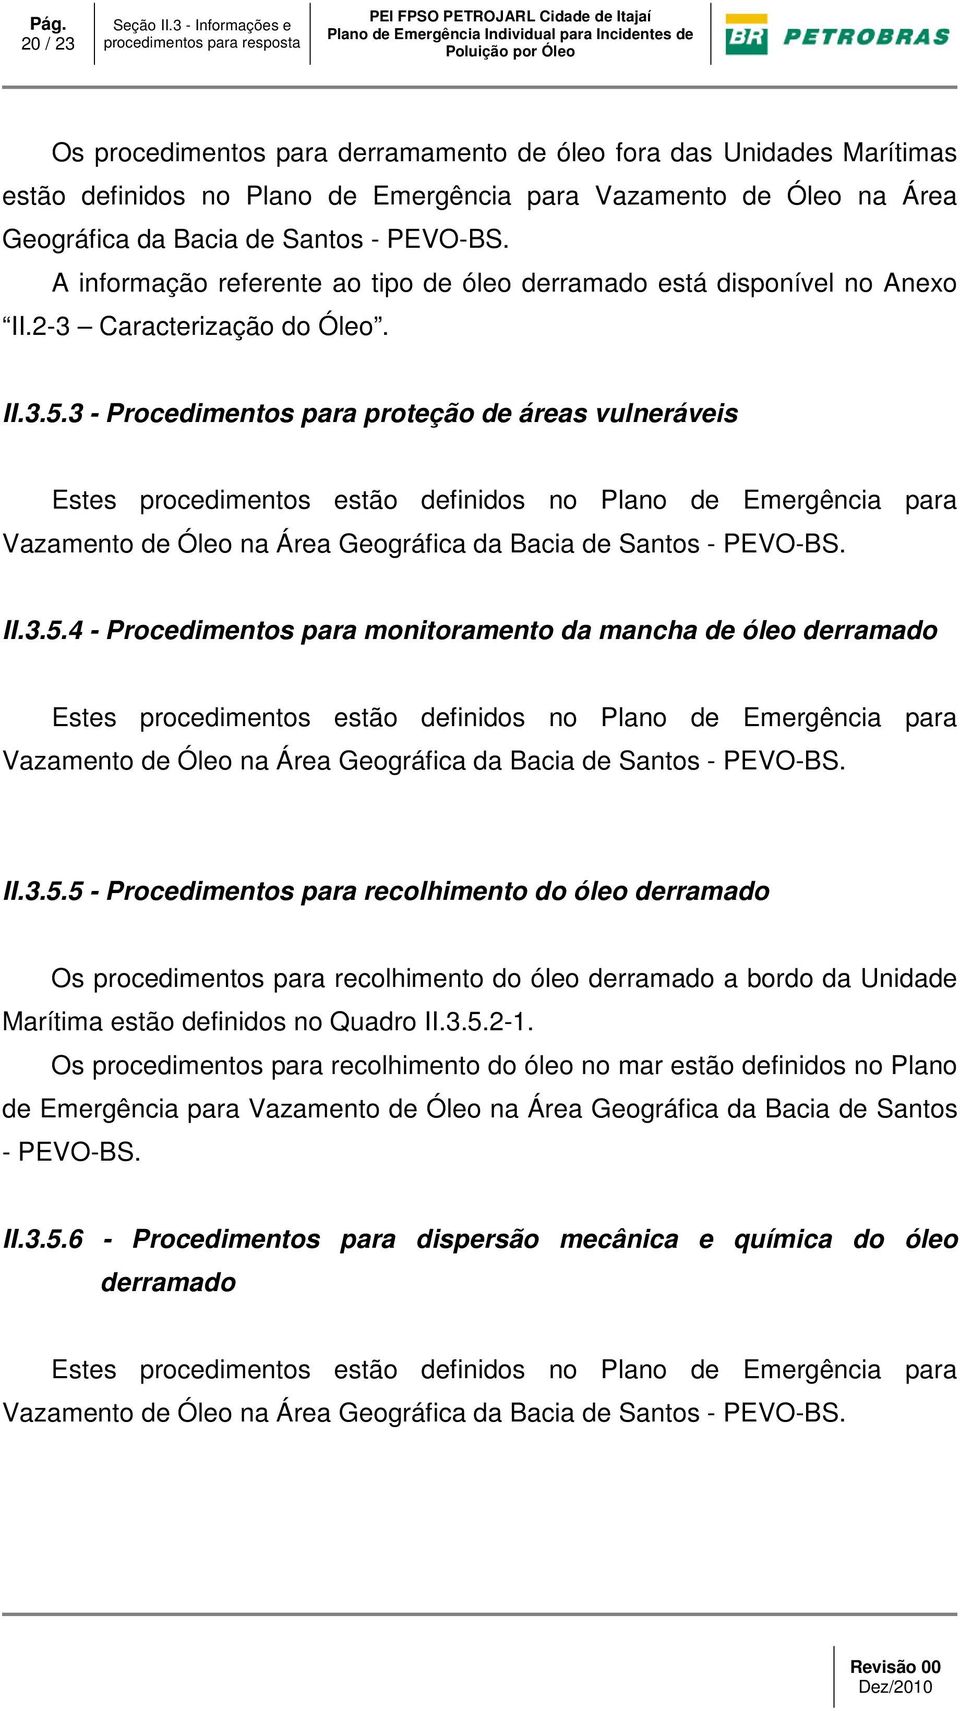 3 - Procedimentos para proteção de áreas vulneráveis Estes procedimentos estão definidos no Plano de Emergência para Vazamento de Óleo na Área Geográfica da Bacia de Santos - PEVO-BS. II.3.5.